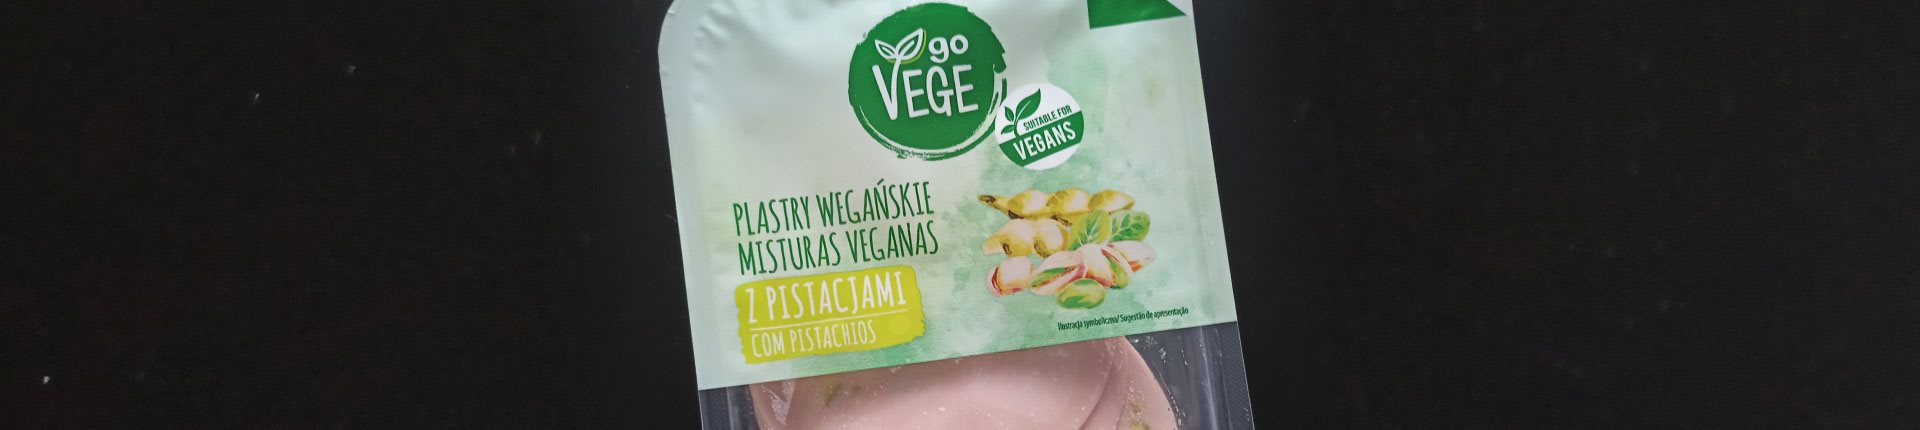 Go Vege Wegańskie plastry z pistacjami - ocena produktu